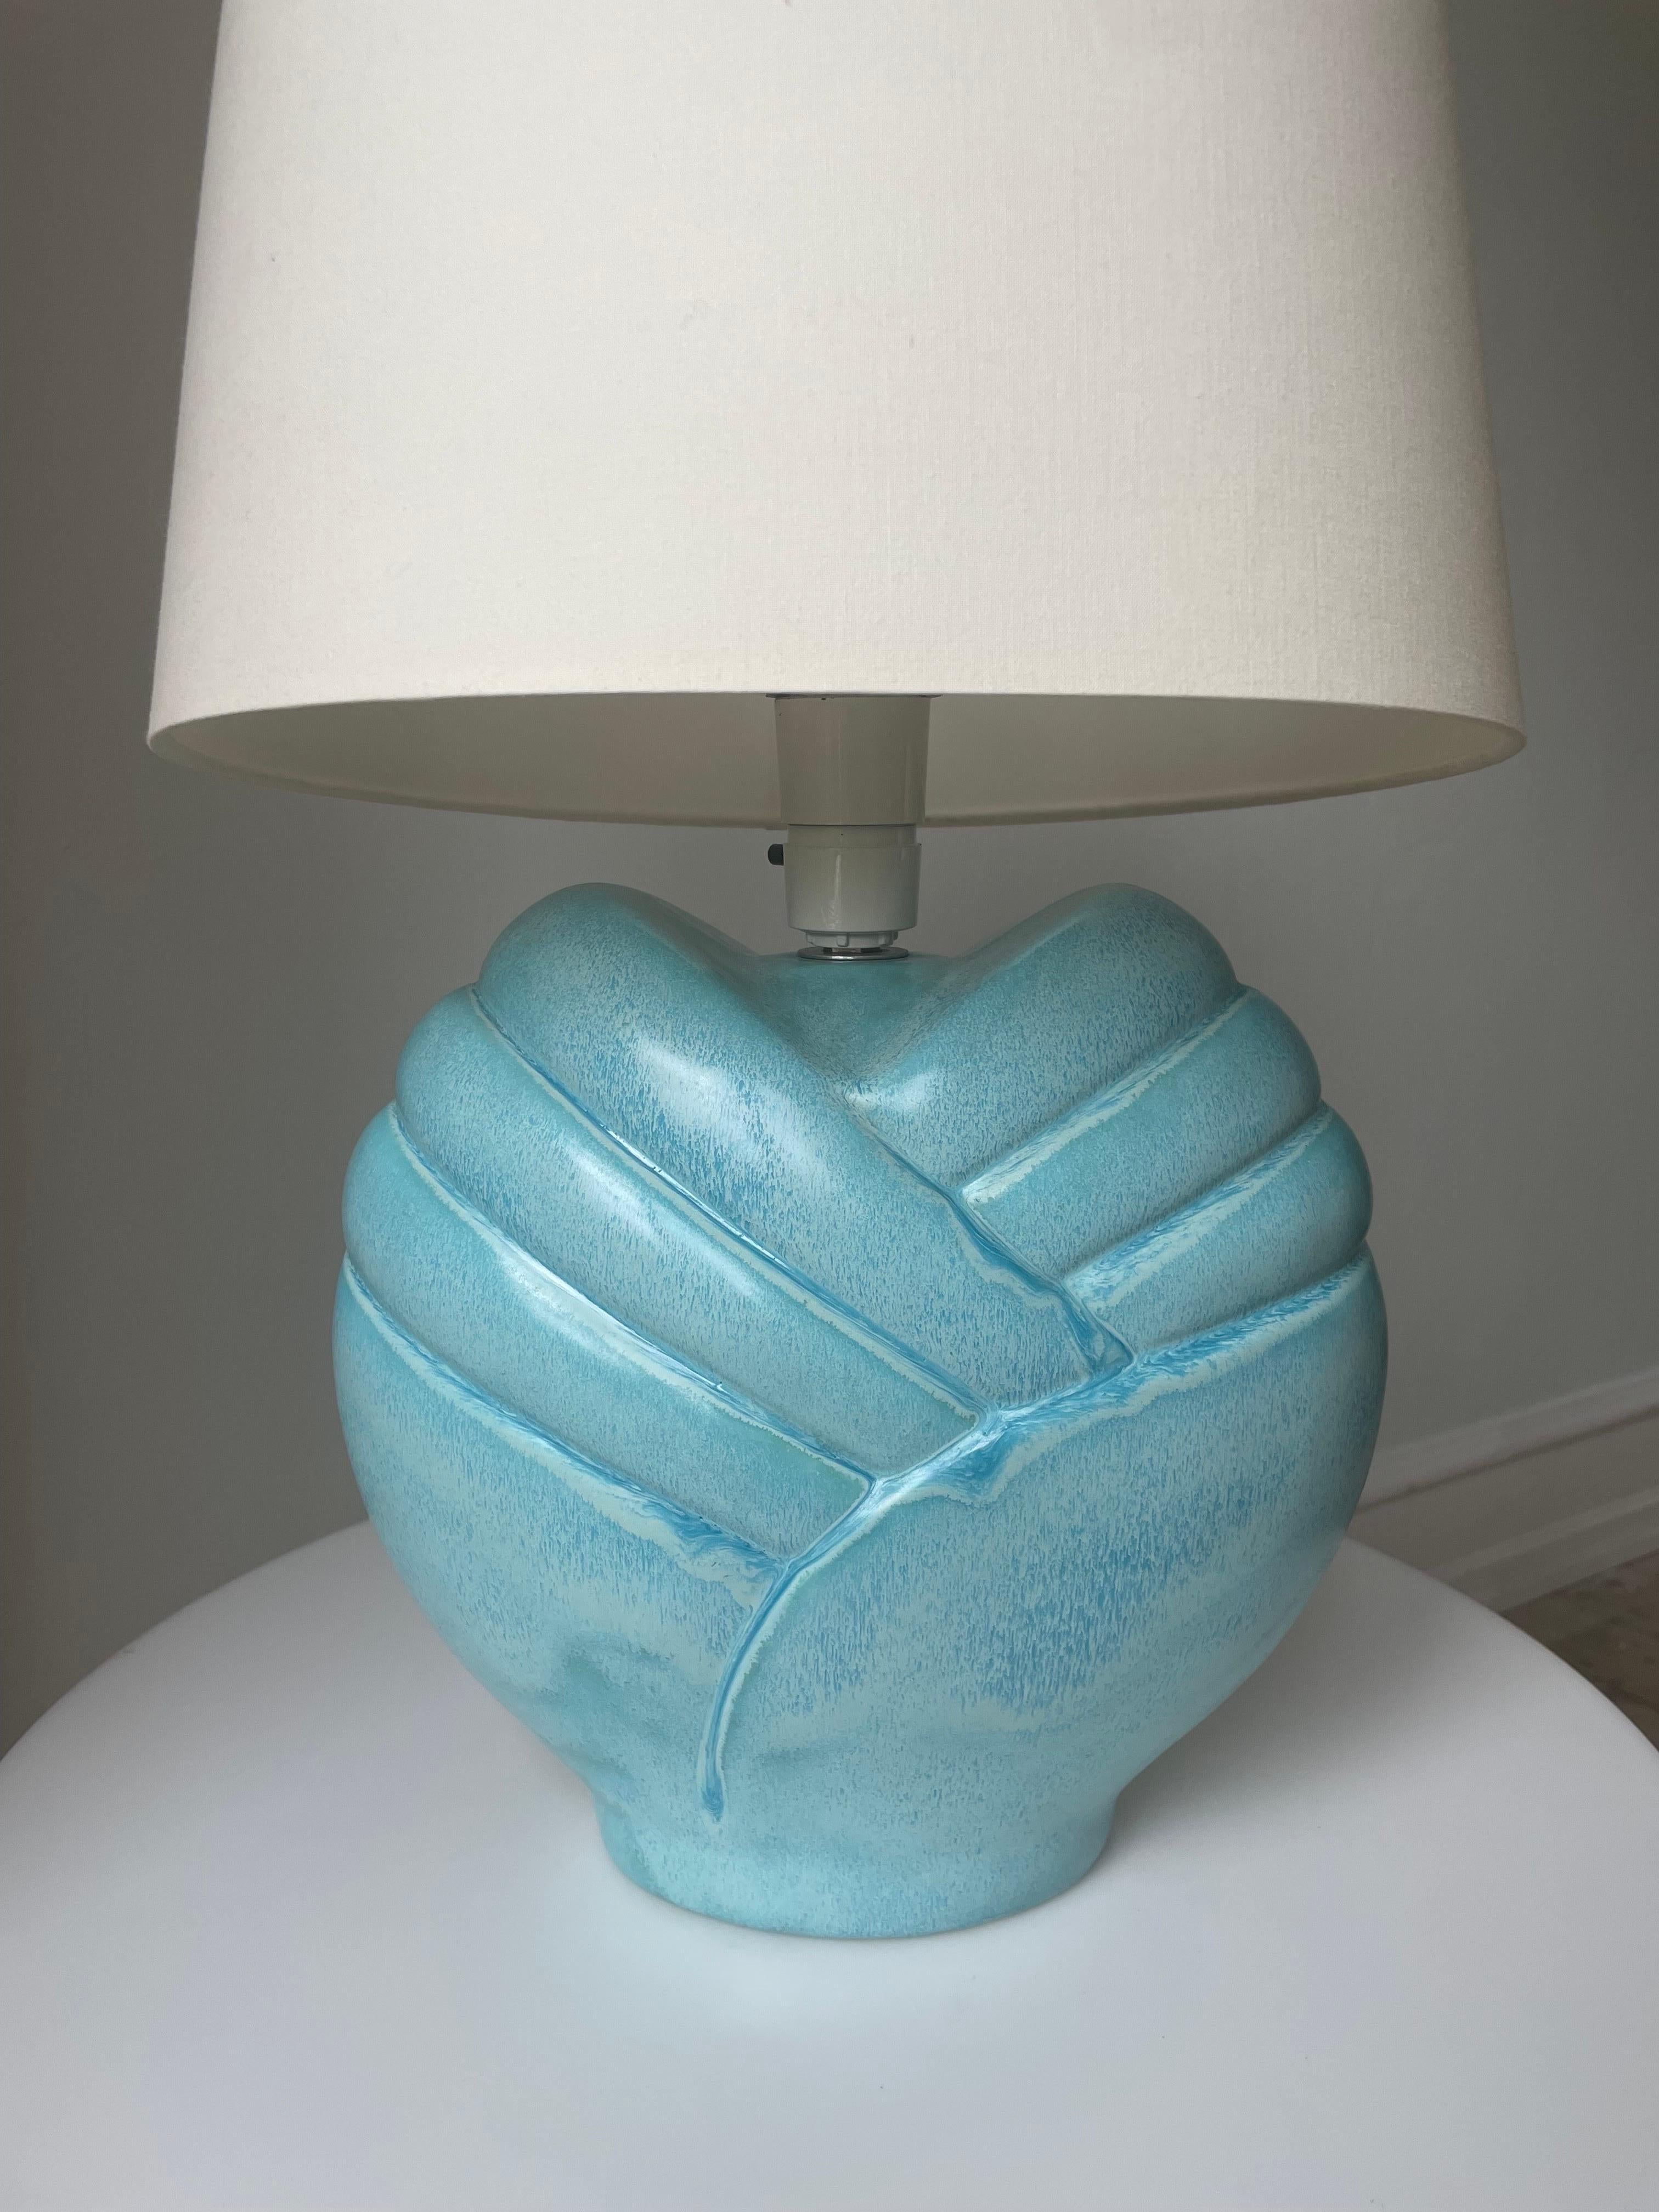 Ceramic Vintage Bulbous Turquoise Blue Art Deco Style Table Lamp For Sale